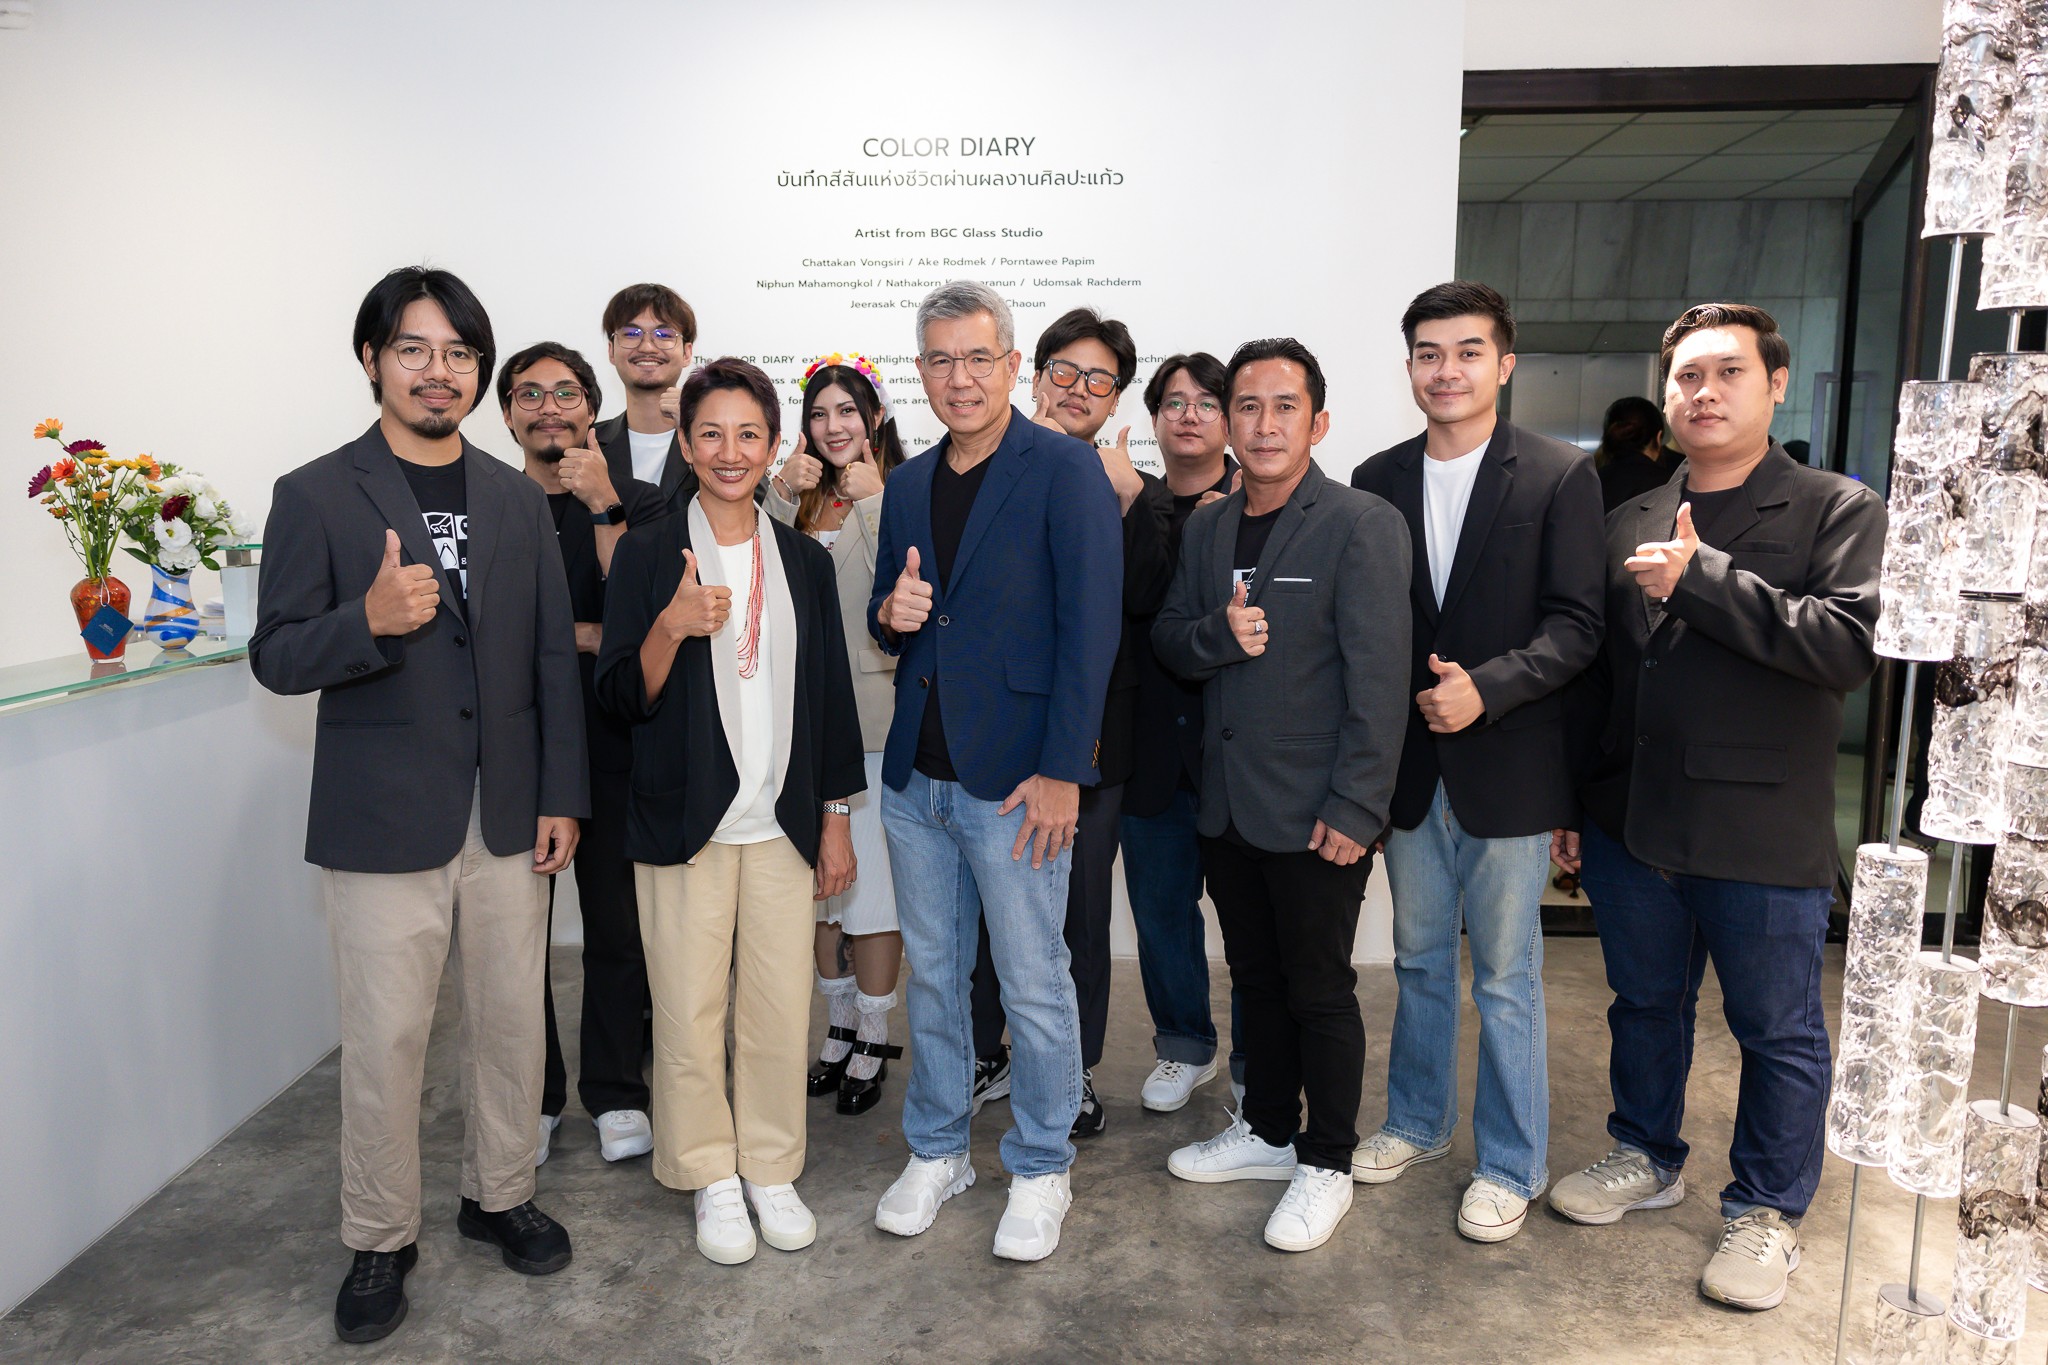 BGC เนรมิตนิทรรศการศิลปะแก้ว “COLOR DIARY” เผยโฉมงานศิลป์ที่ศูนย์การเรียนรู้แห่งแรกในไทย